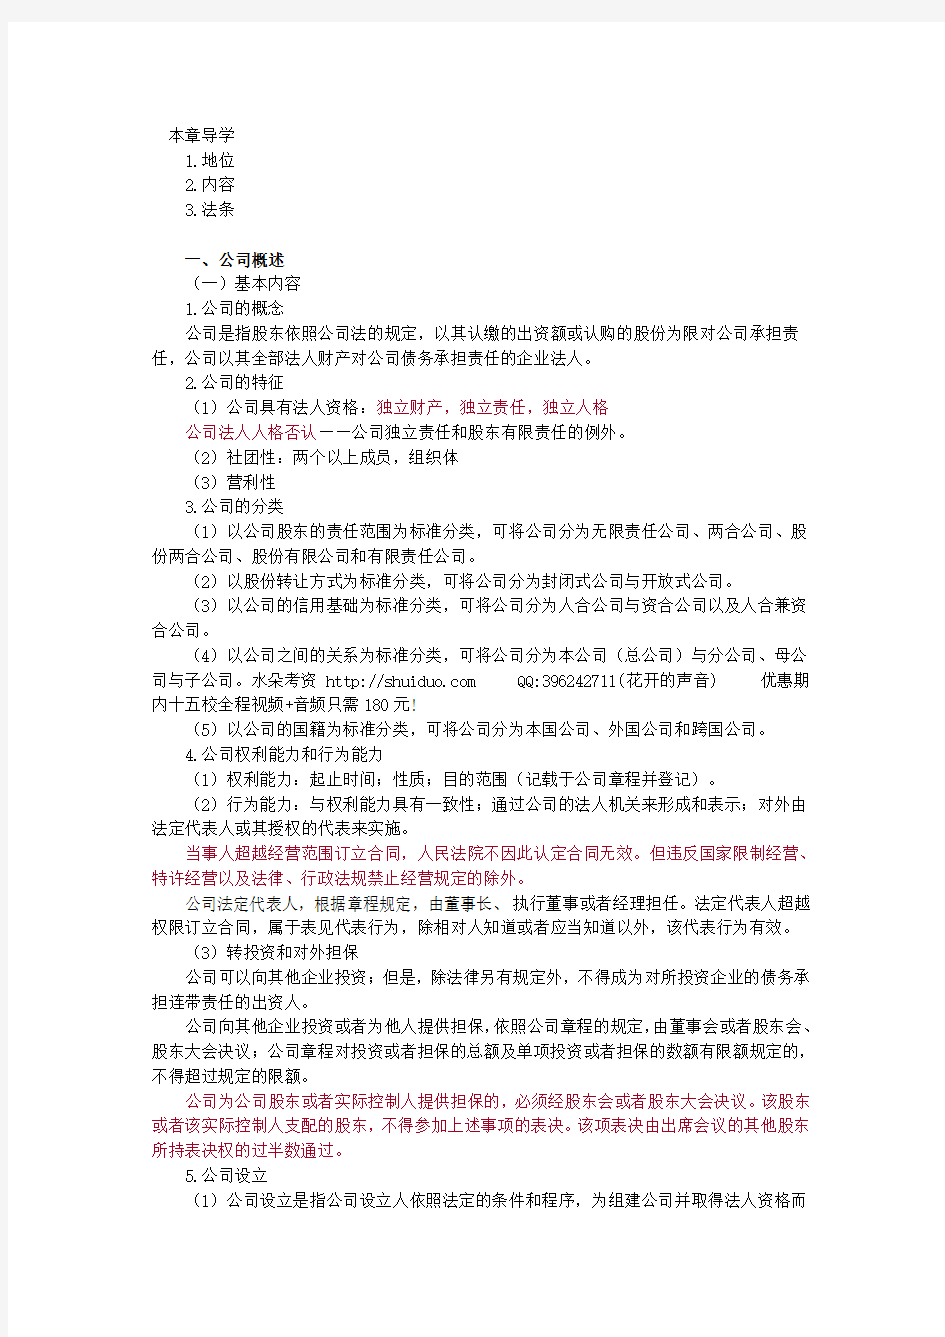 【讲义】2013年法律教育网基础班商法-汪华亮讲义